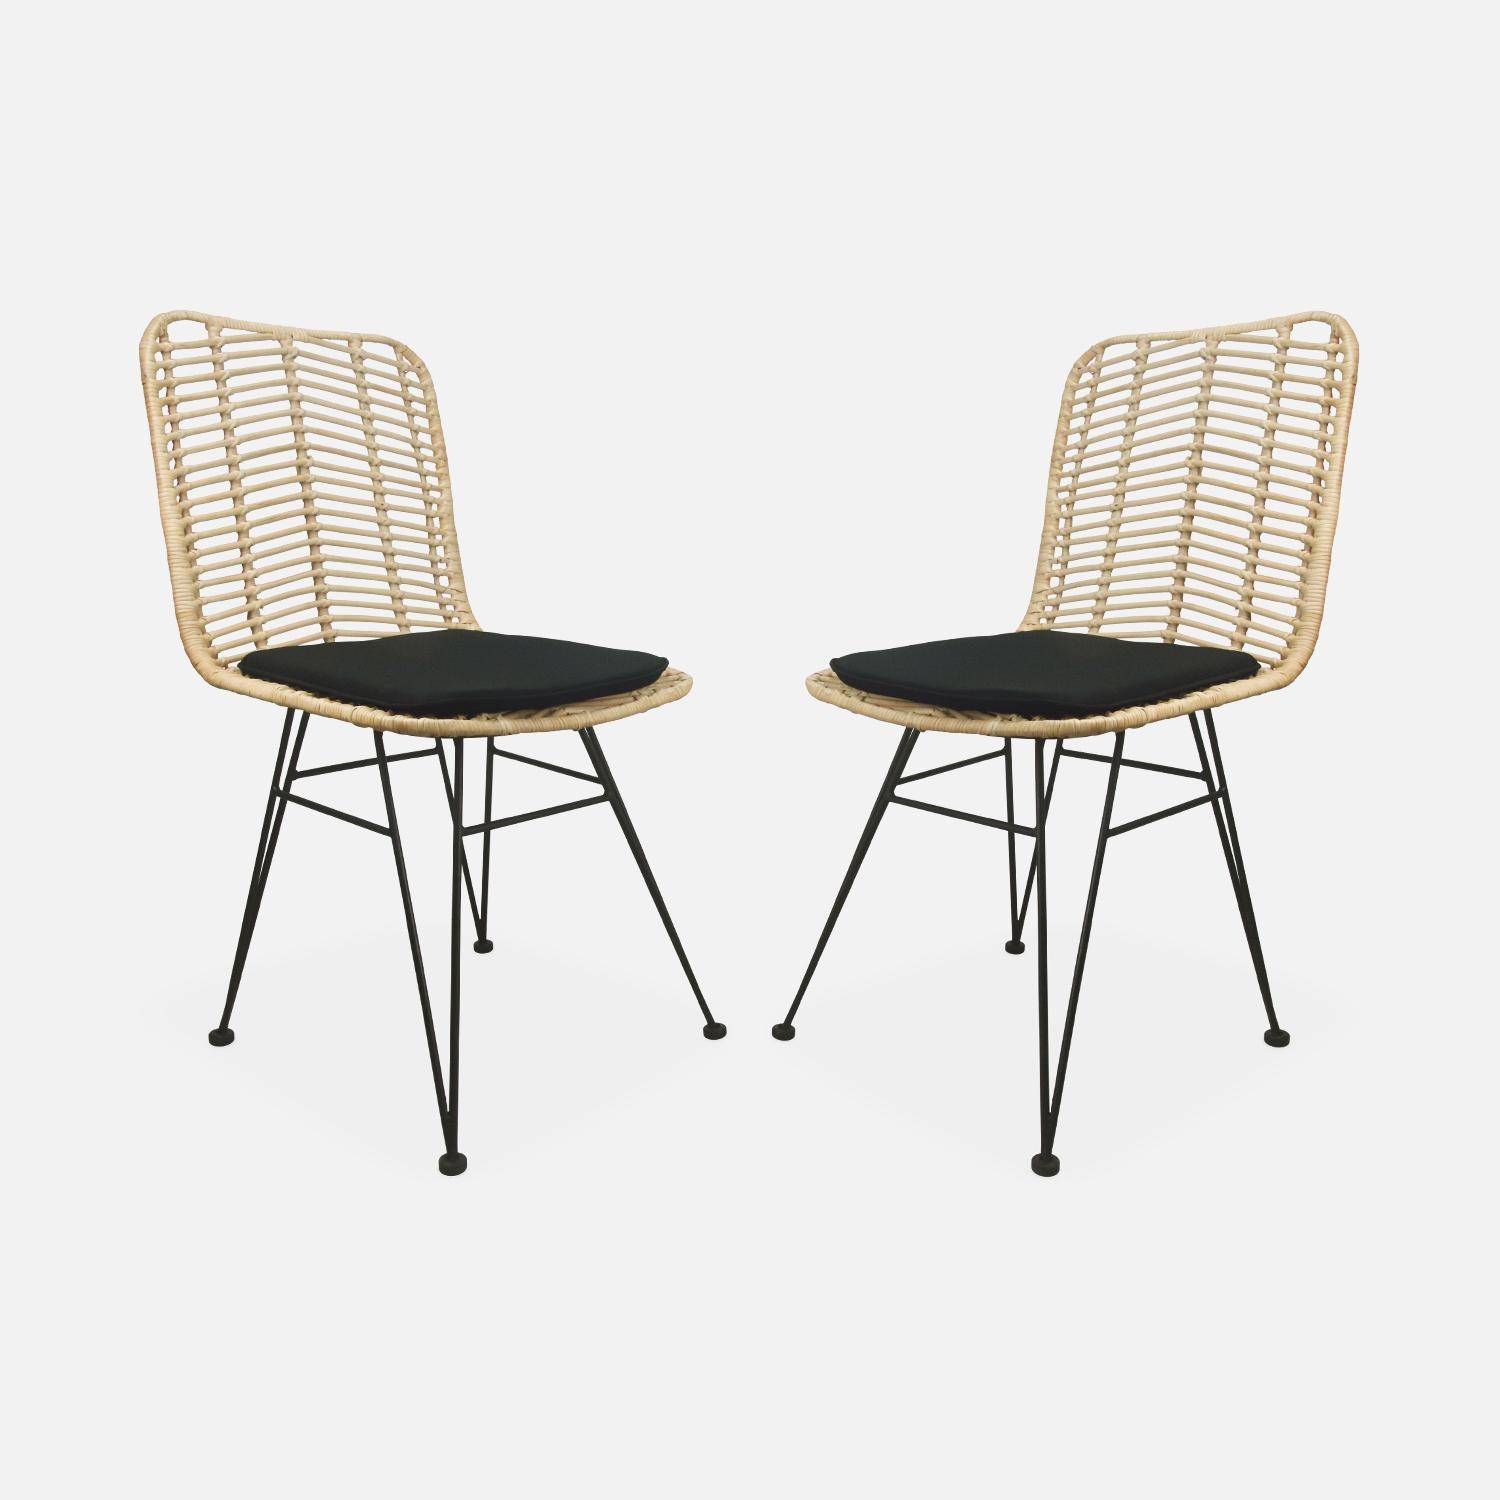 Dos sillas de ratán natural y metal, cojines negros - Cahya,sweeek,Photo4